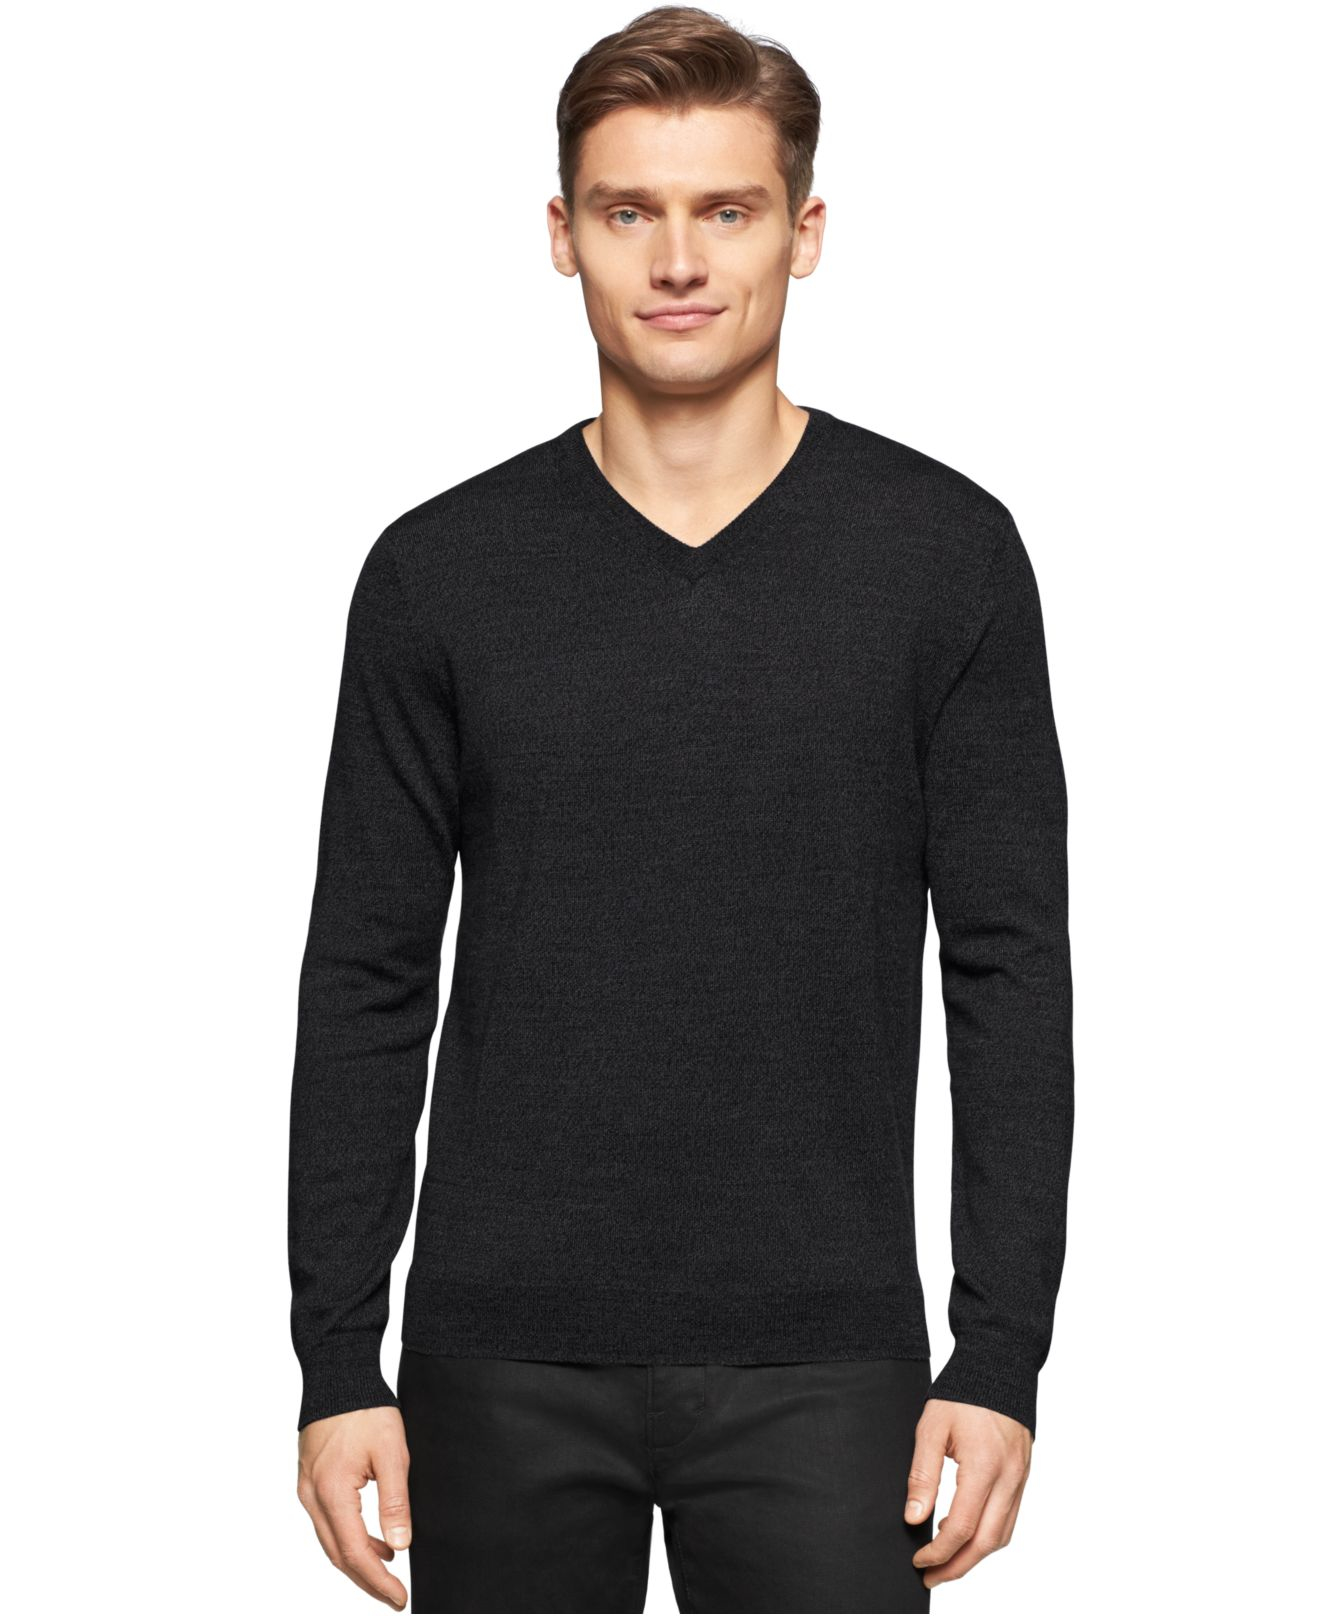 Calvin Klein Merino Wool V-neck Sweater in Gray for Men - Lyst